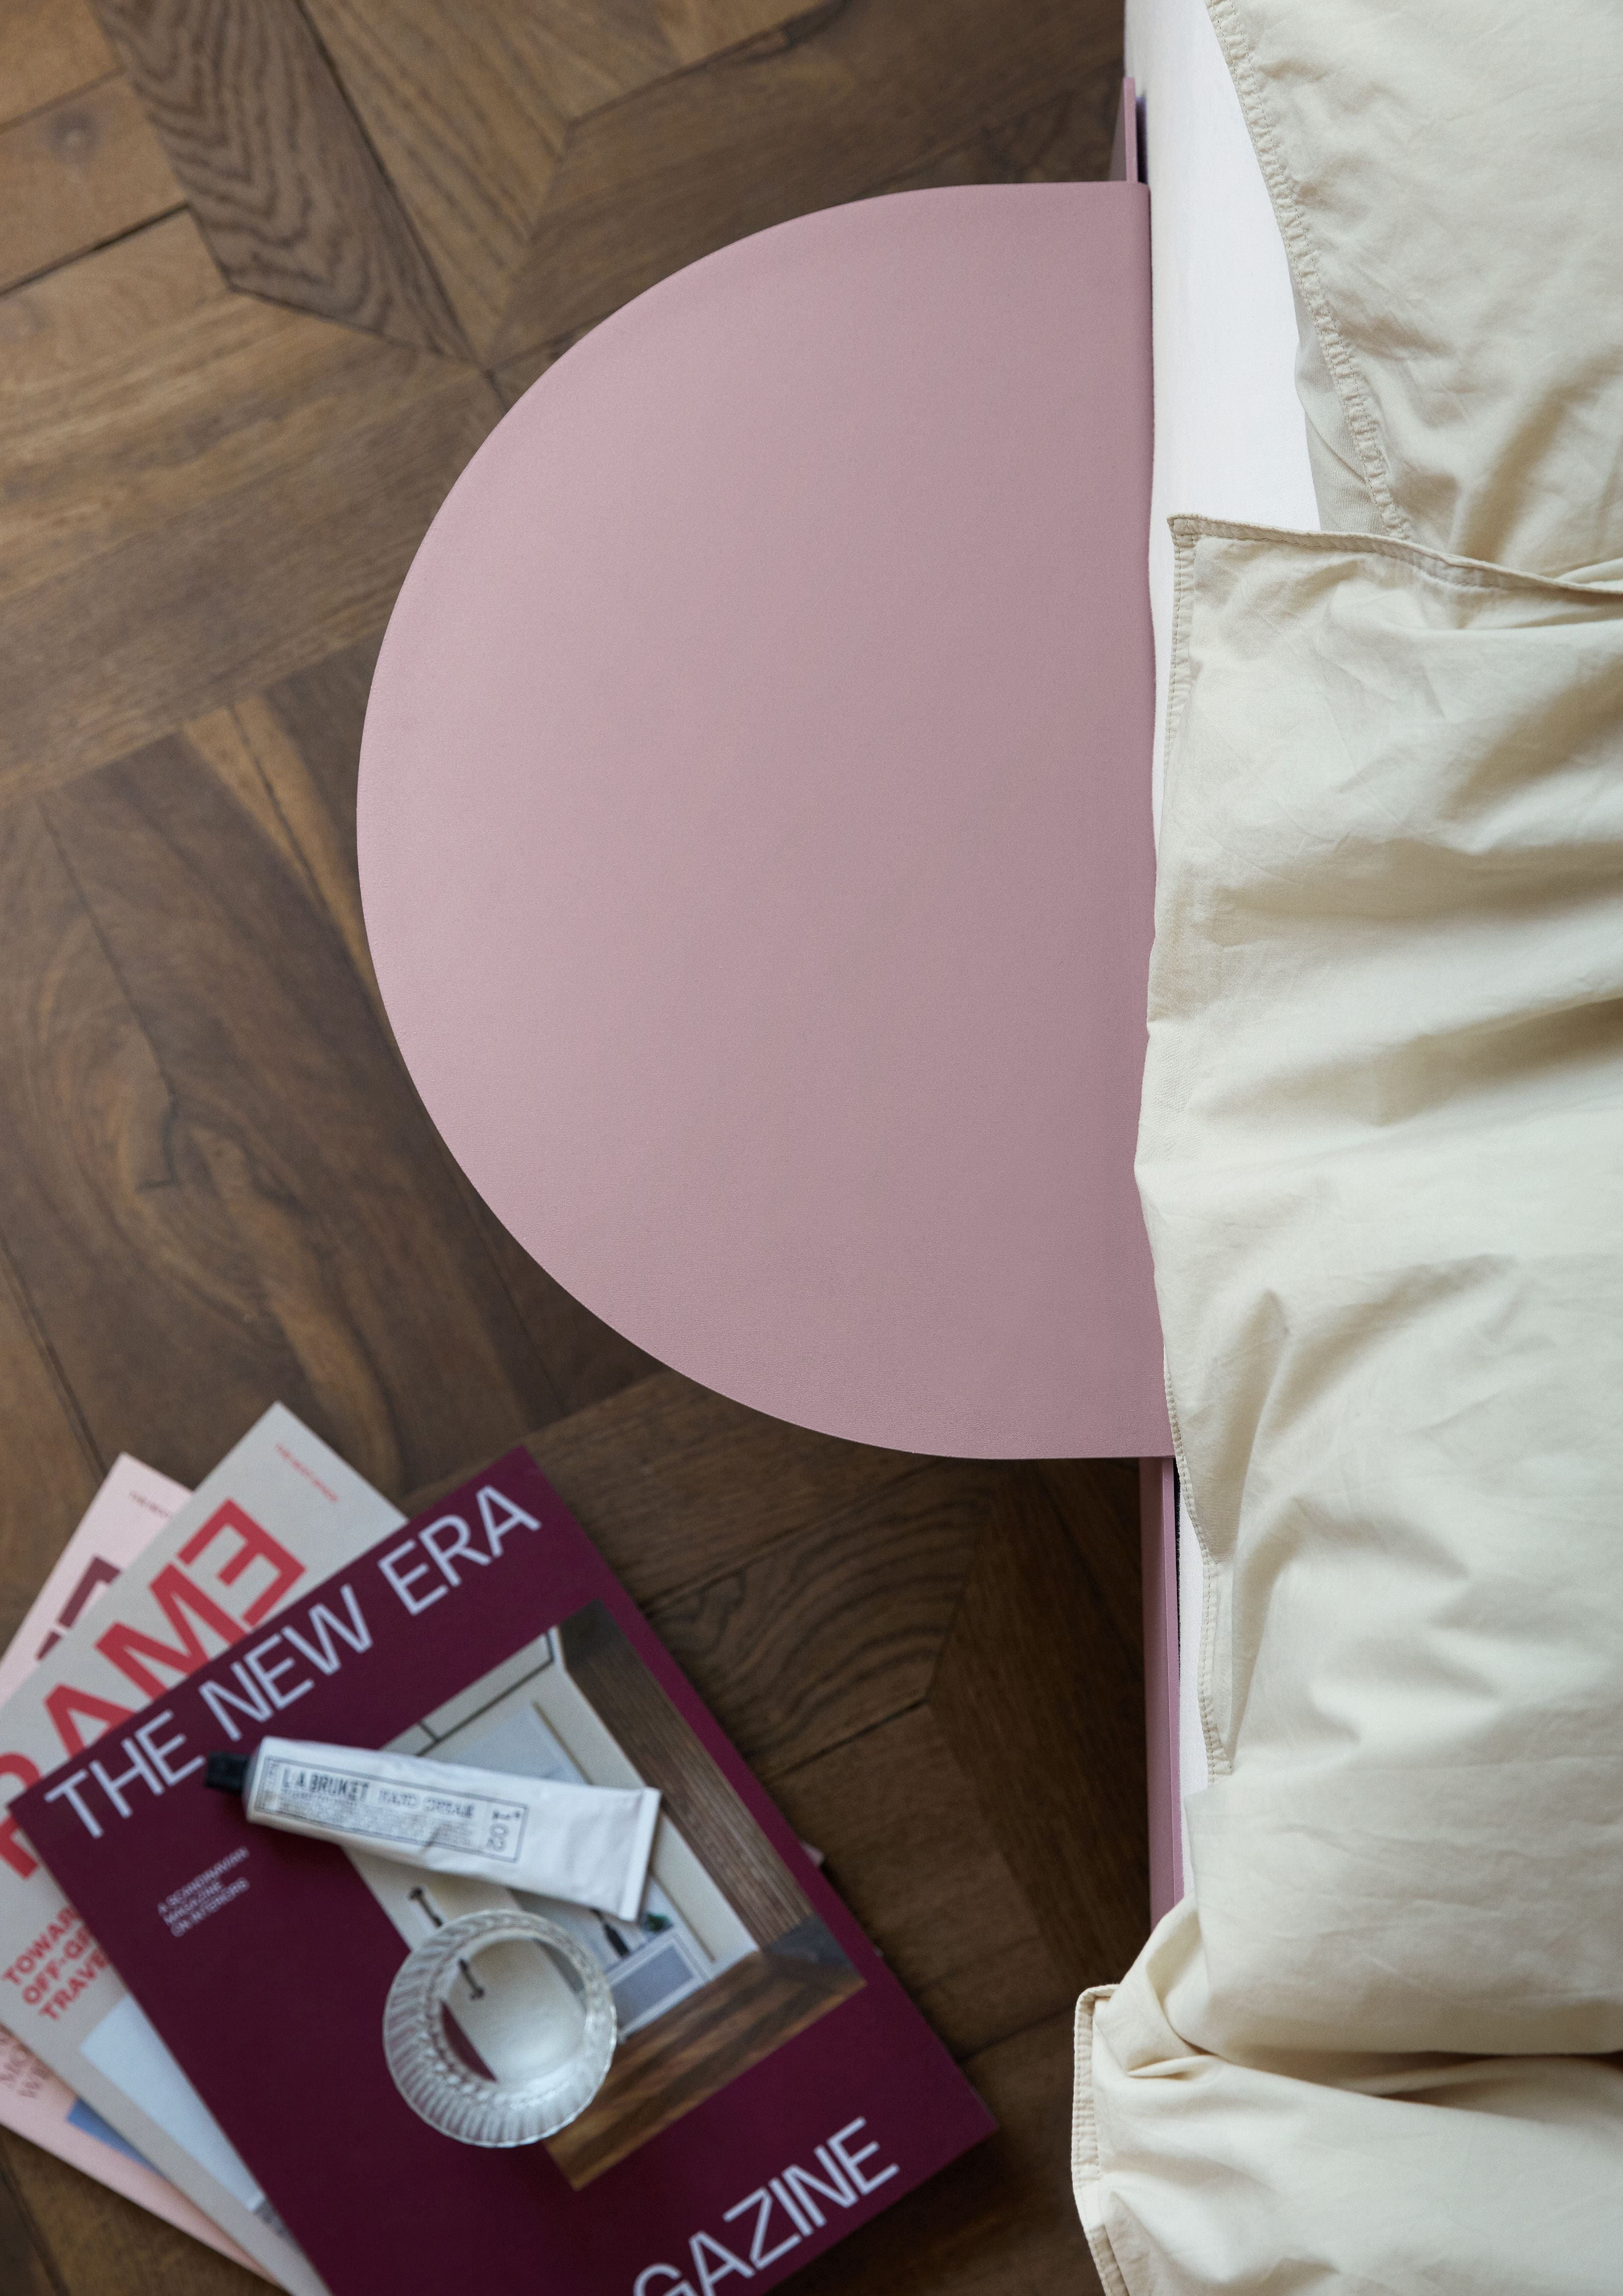 Letto moebe con leghe da letto 90 cm, rosa polverosa